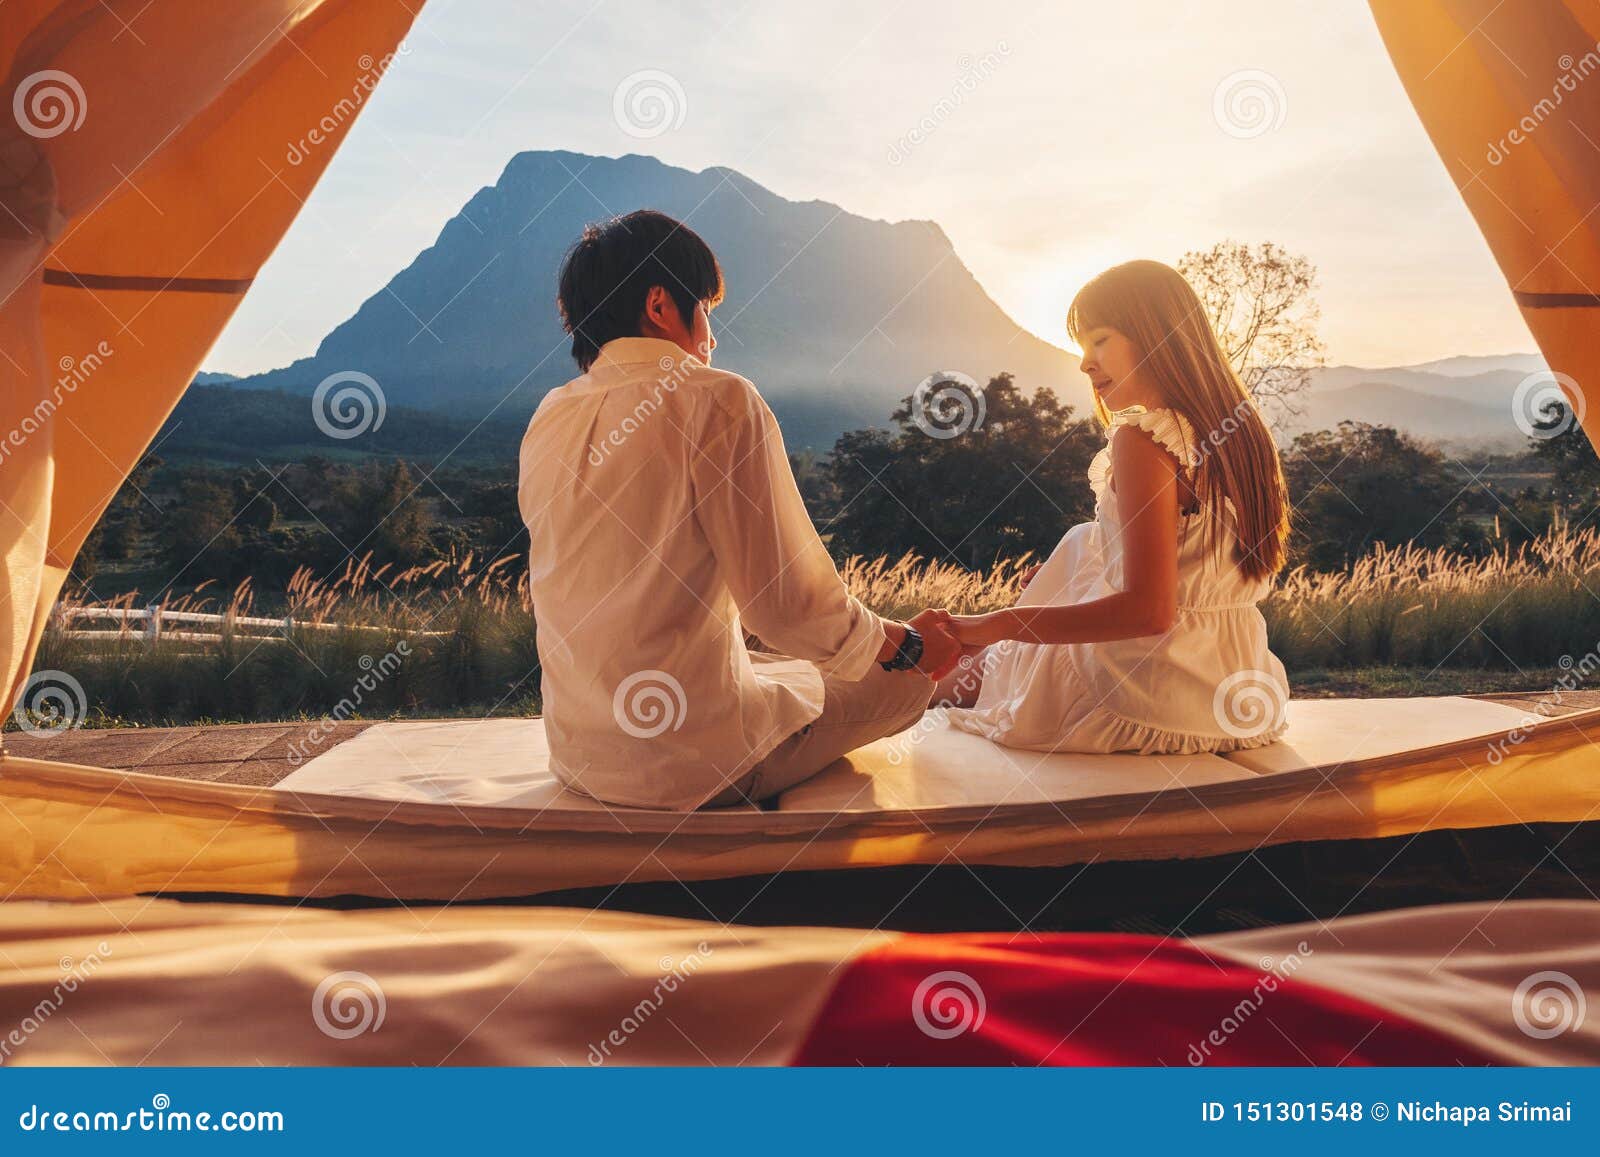 asian virgin outdoor Couple